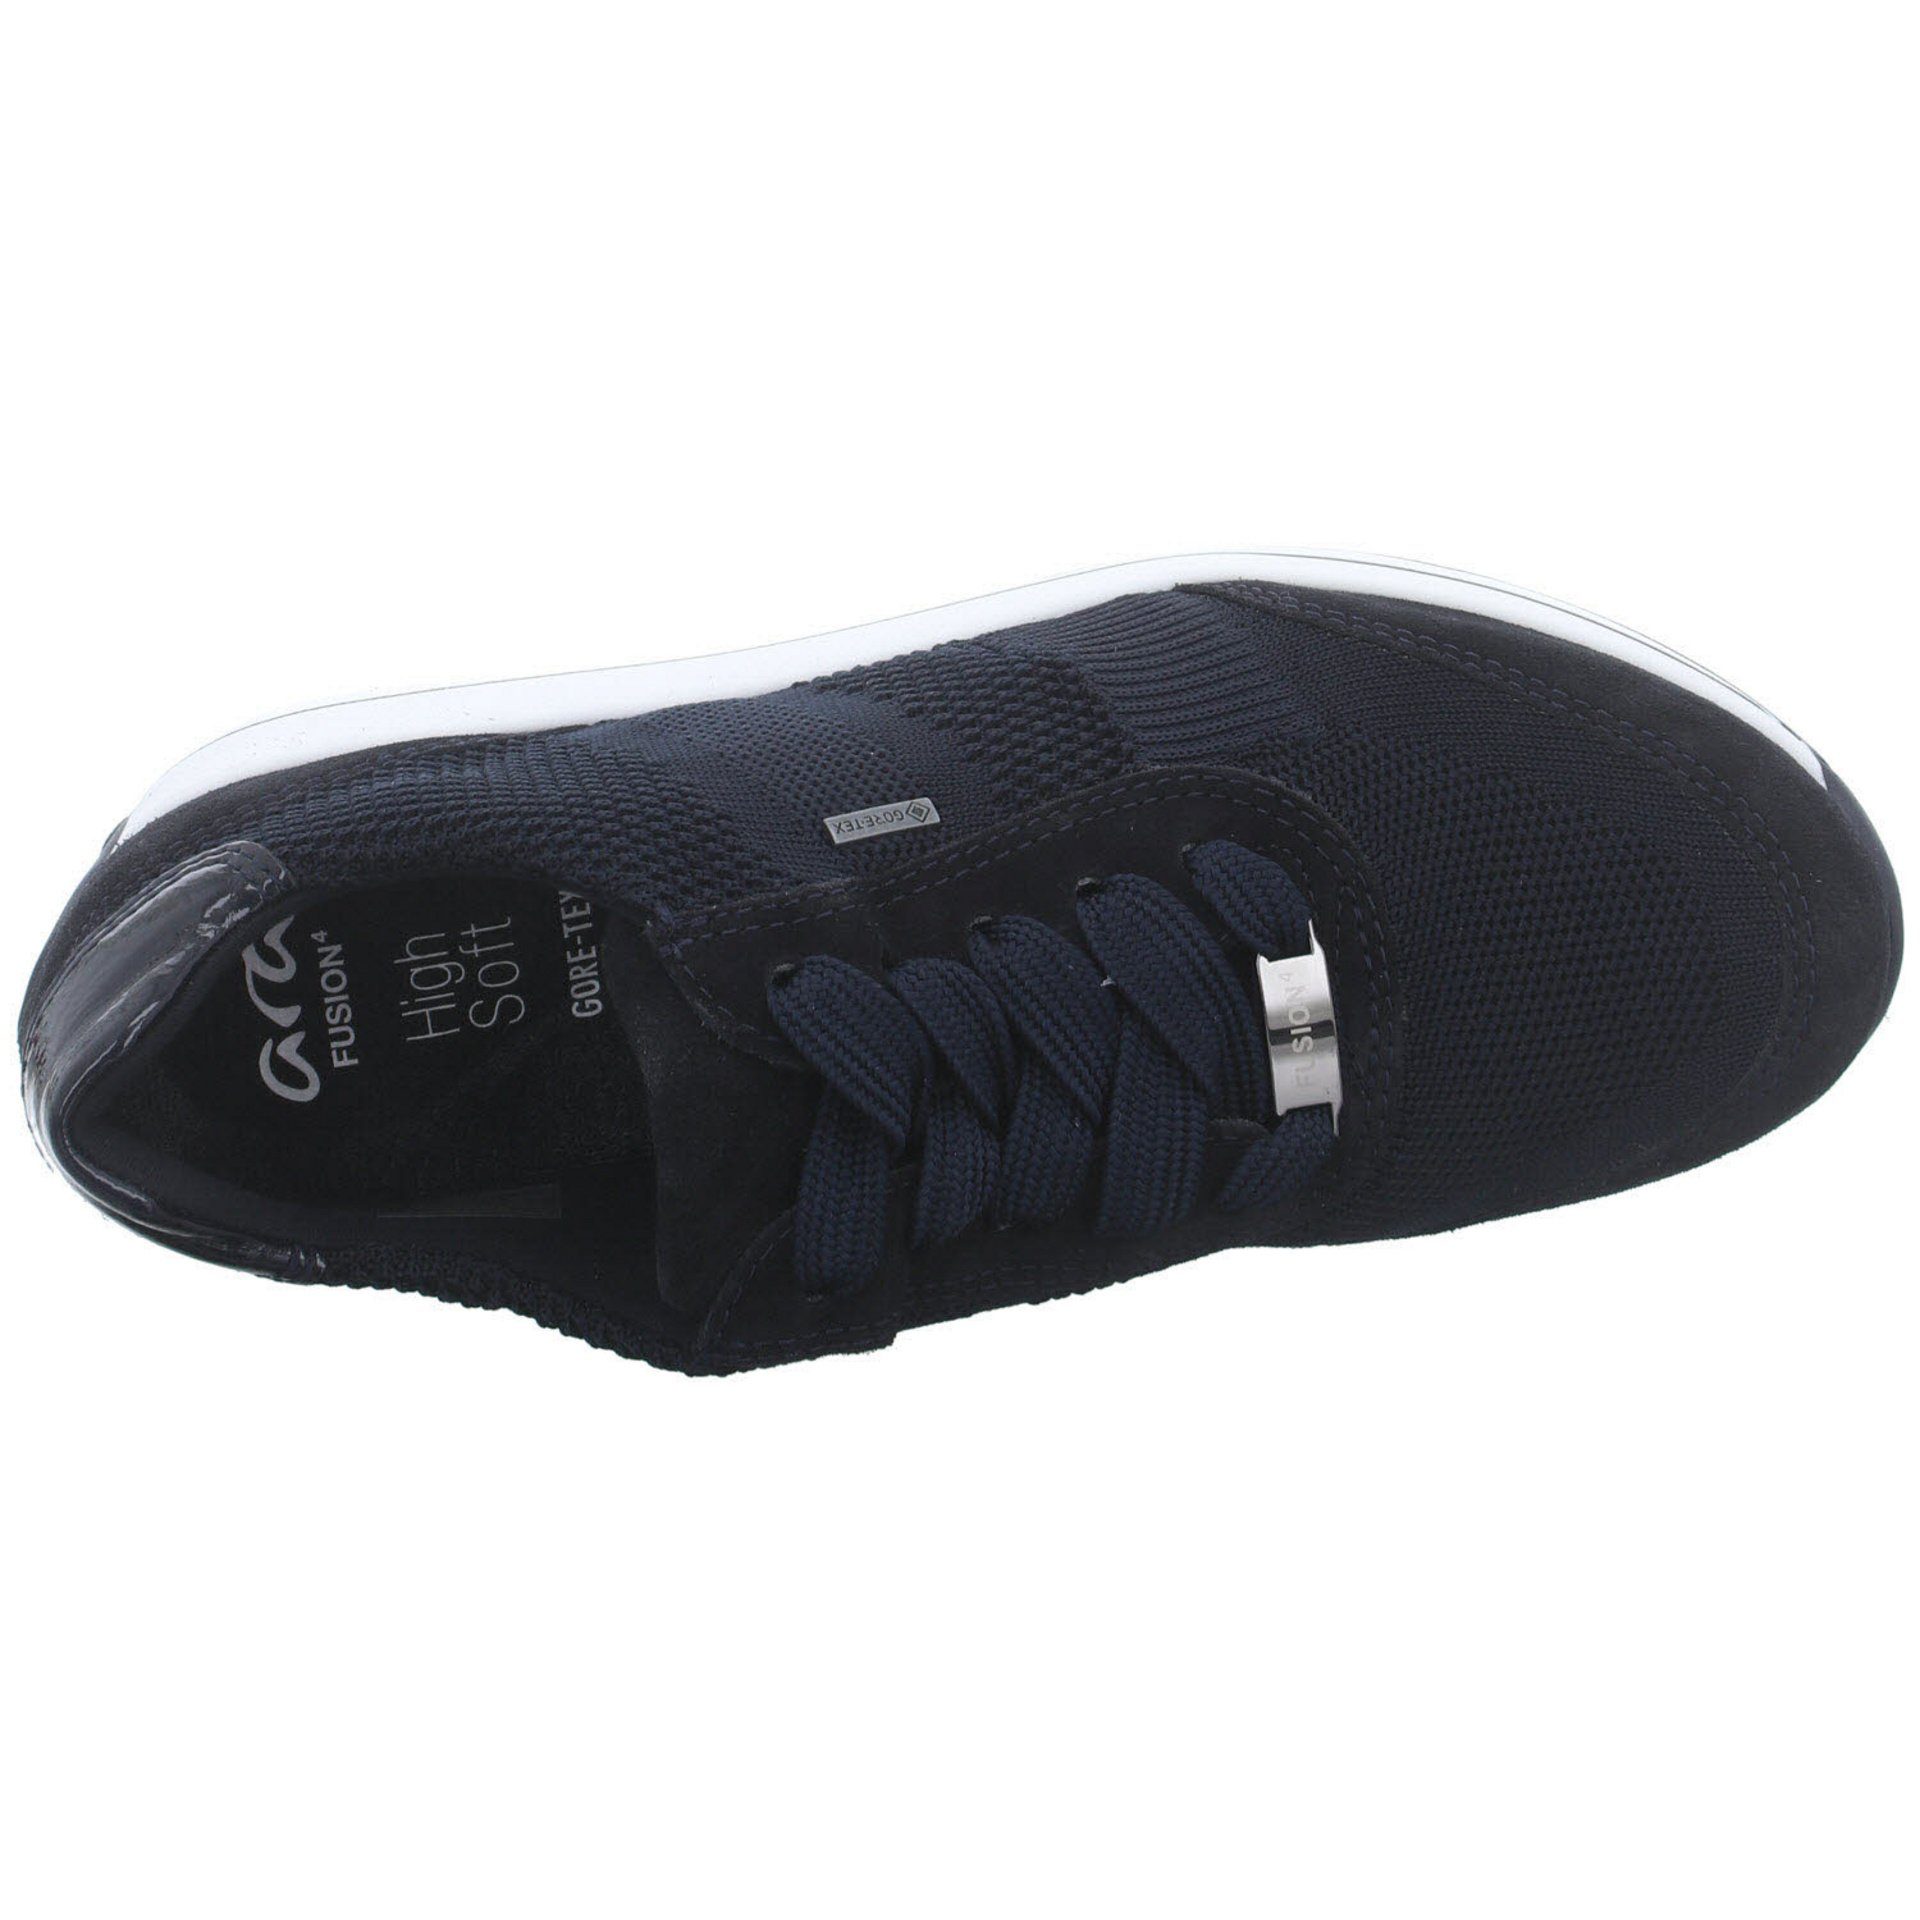 Ara Damen Sneaker Schuhe Schnürschuh dunkel blau Leder-/Textilkombination